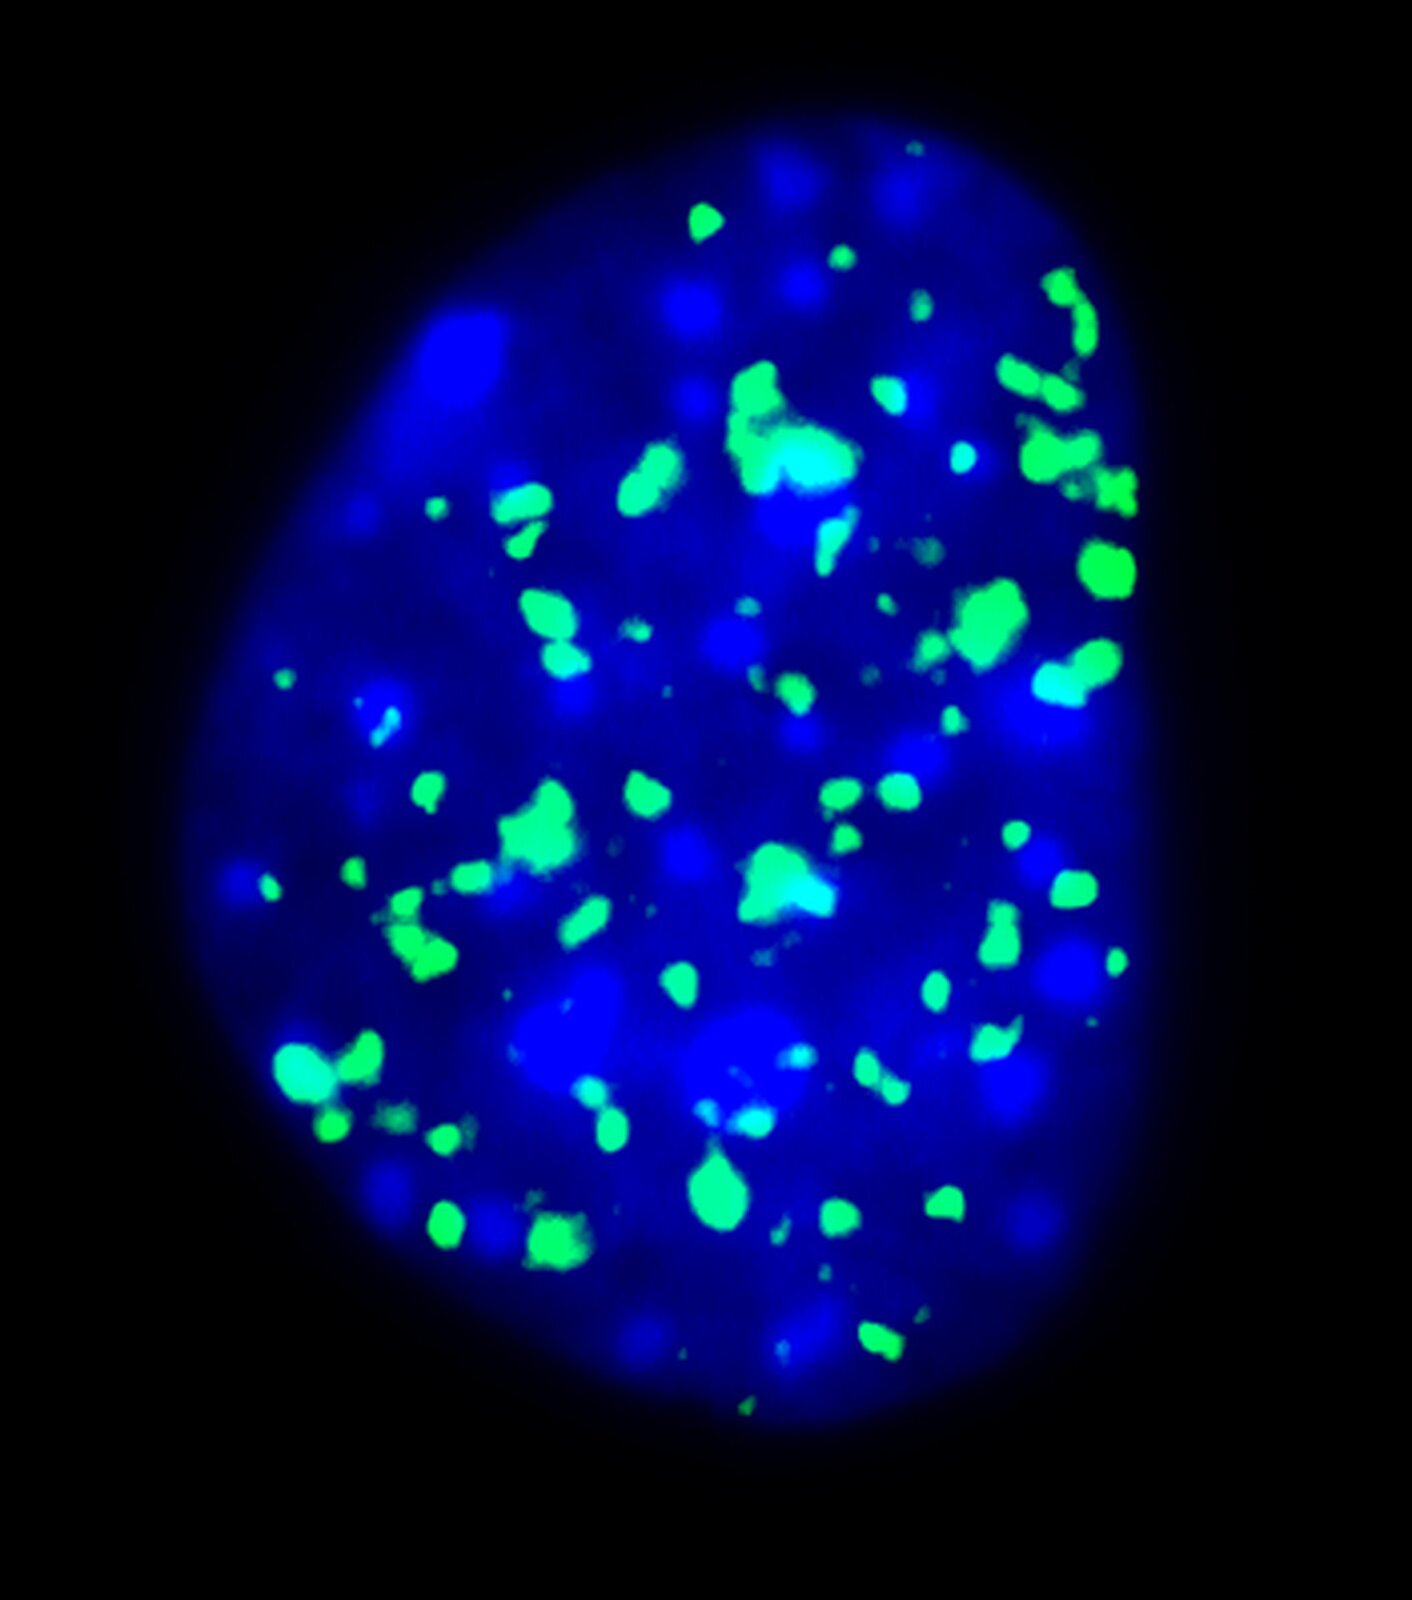 Rys. 8b. Zdjęcie przedstawia obraz białek fluorescencyjnych w postaci niebieskiego żelu z widocznymi zmianami o barwie zielonej. Całość na czarnym tle.